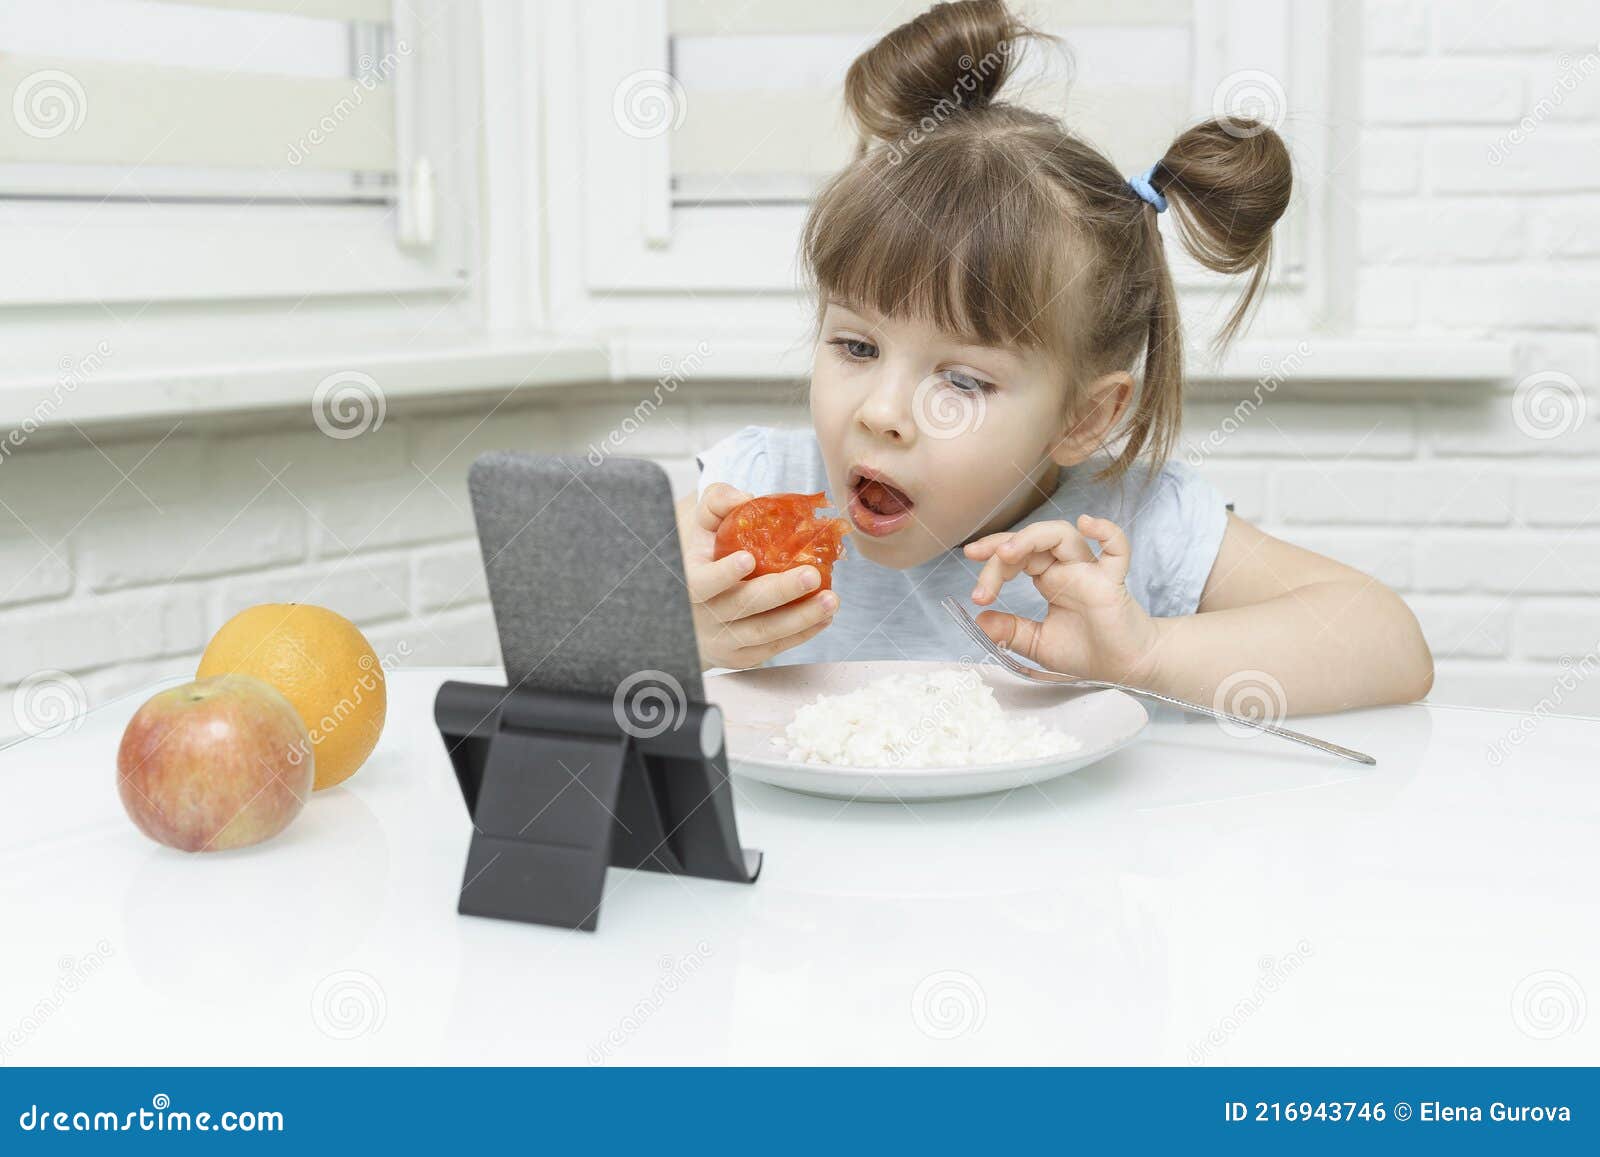 吃东西的女孩图片大全-吃东西的女孩高清图片下载-觅知网